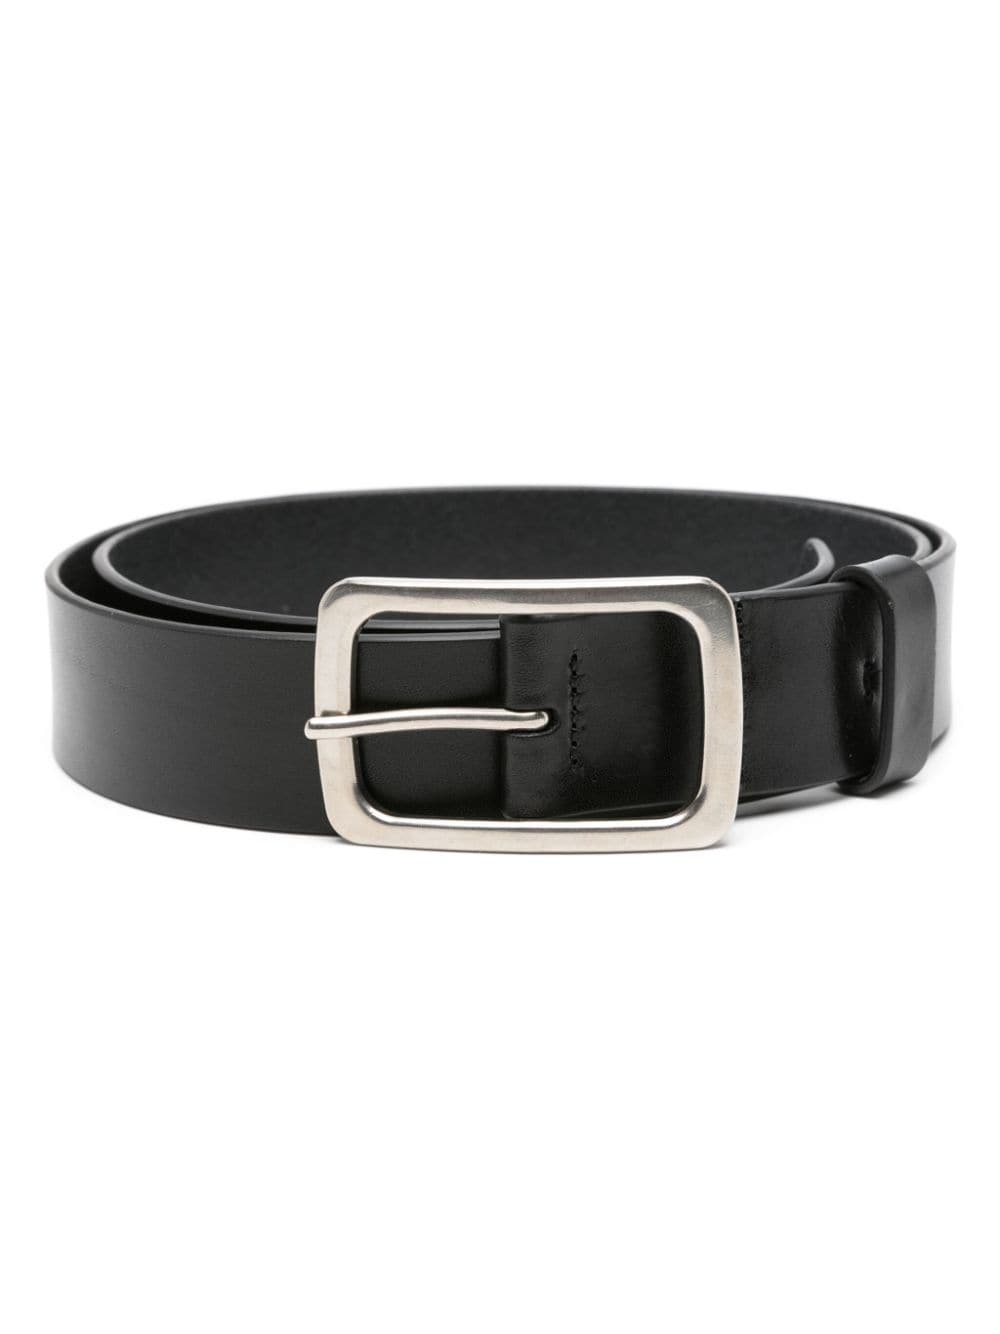 classic leather belt - 1